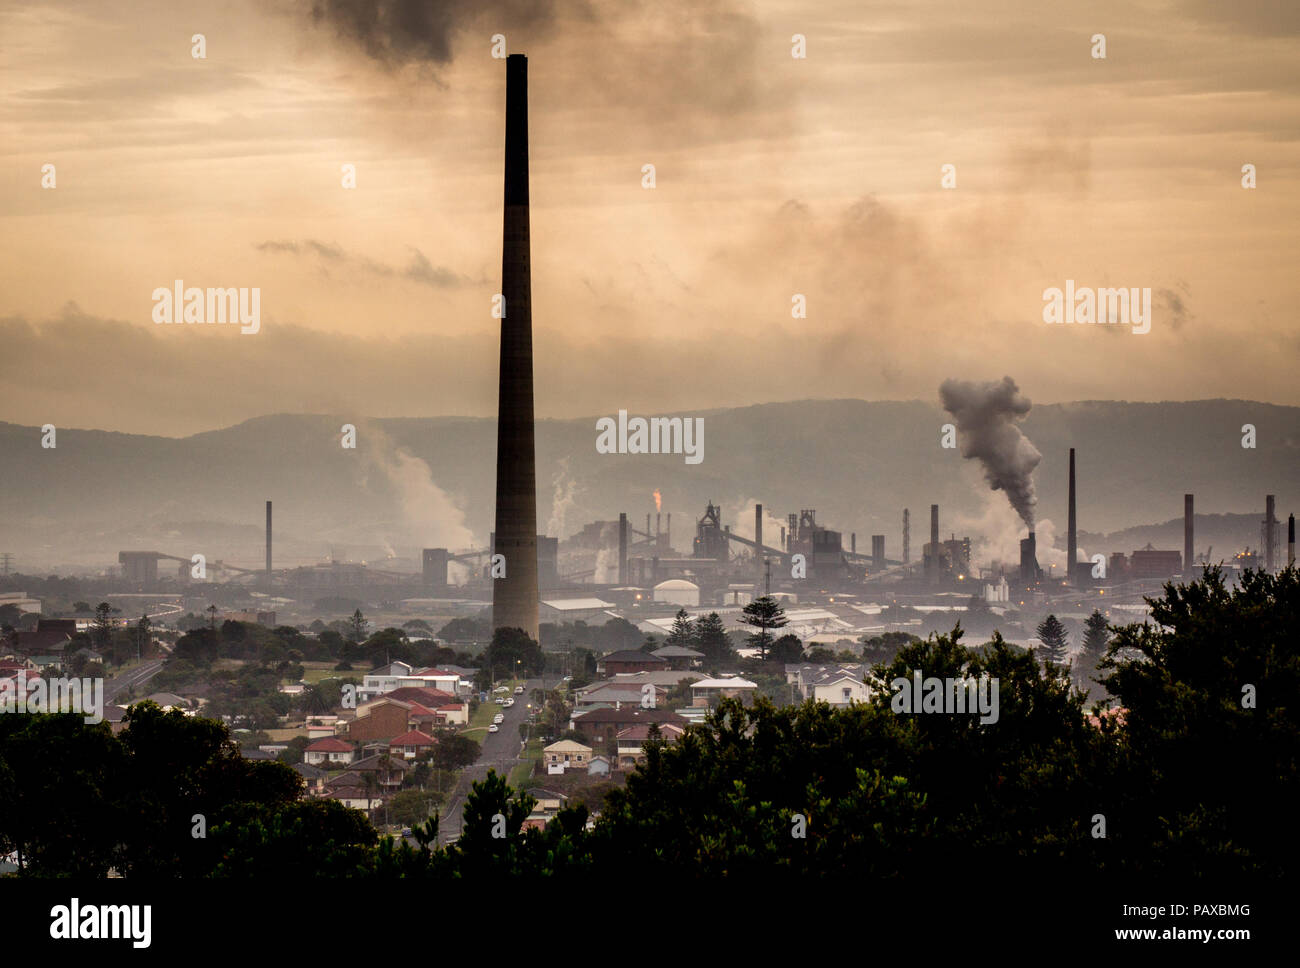 Il cambiamento climatico concetto paesaggio industriale con ciminiere che mostra le emissioni di vapore e fumo dallo stabilimento industriale, Port Kembla, NSW Australia Foto Stock